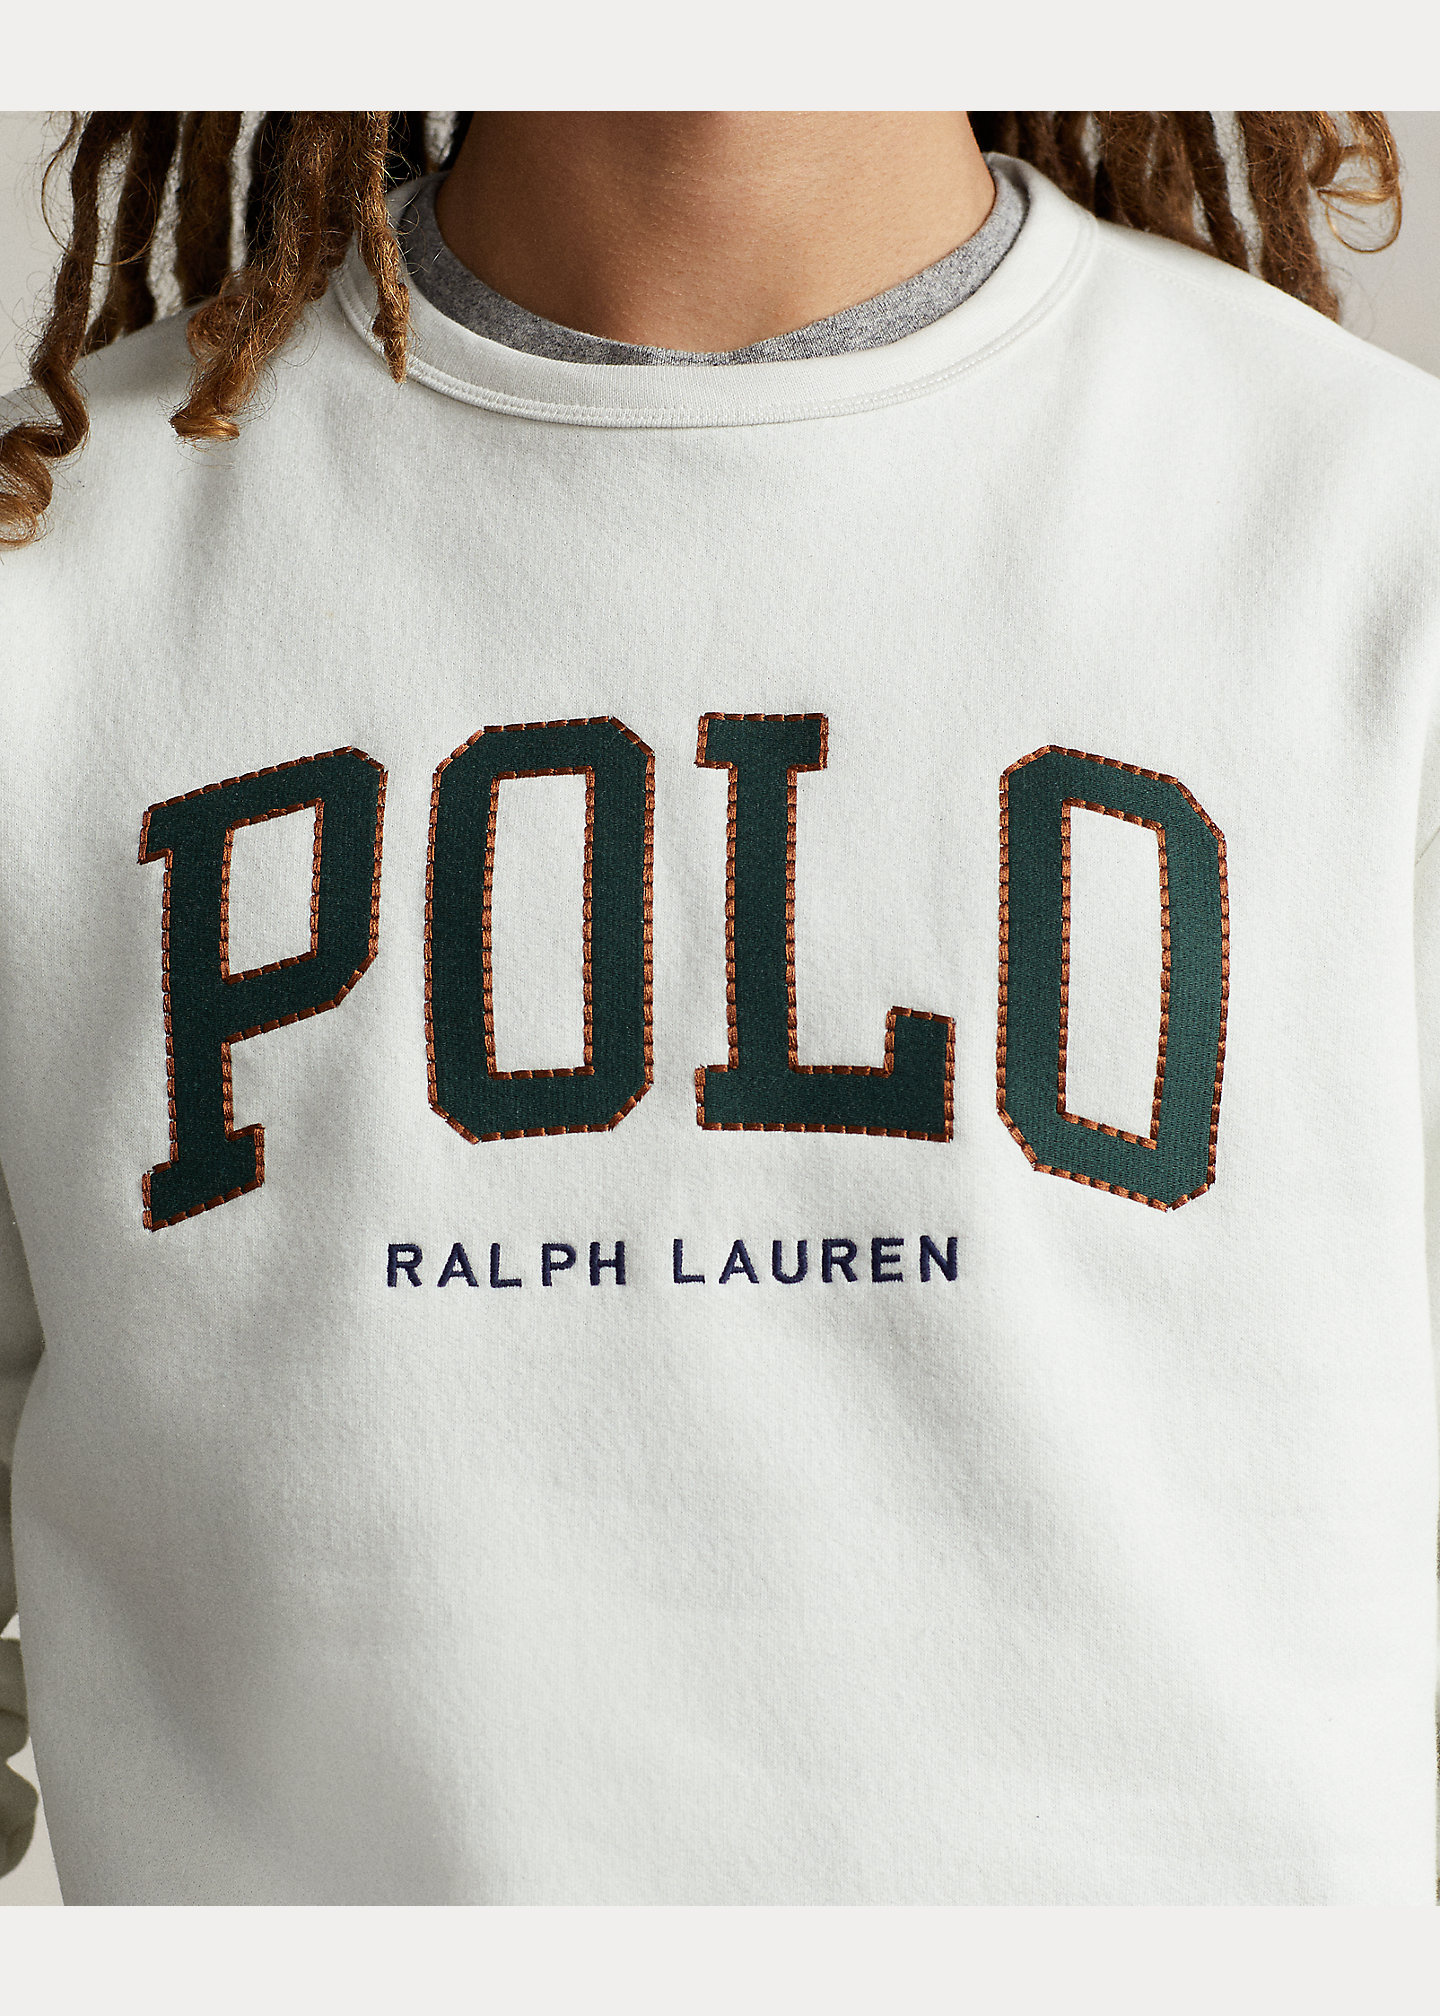 Ralph Lauren Knitwear Ralph Lauren 710-917887-001